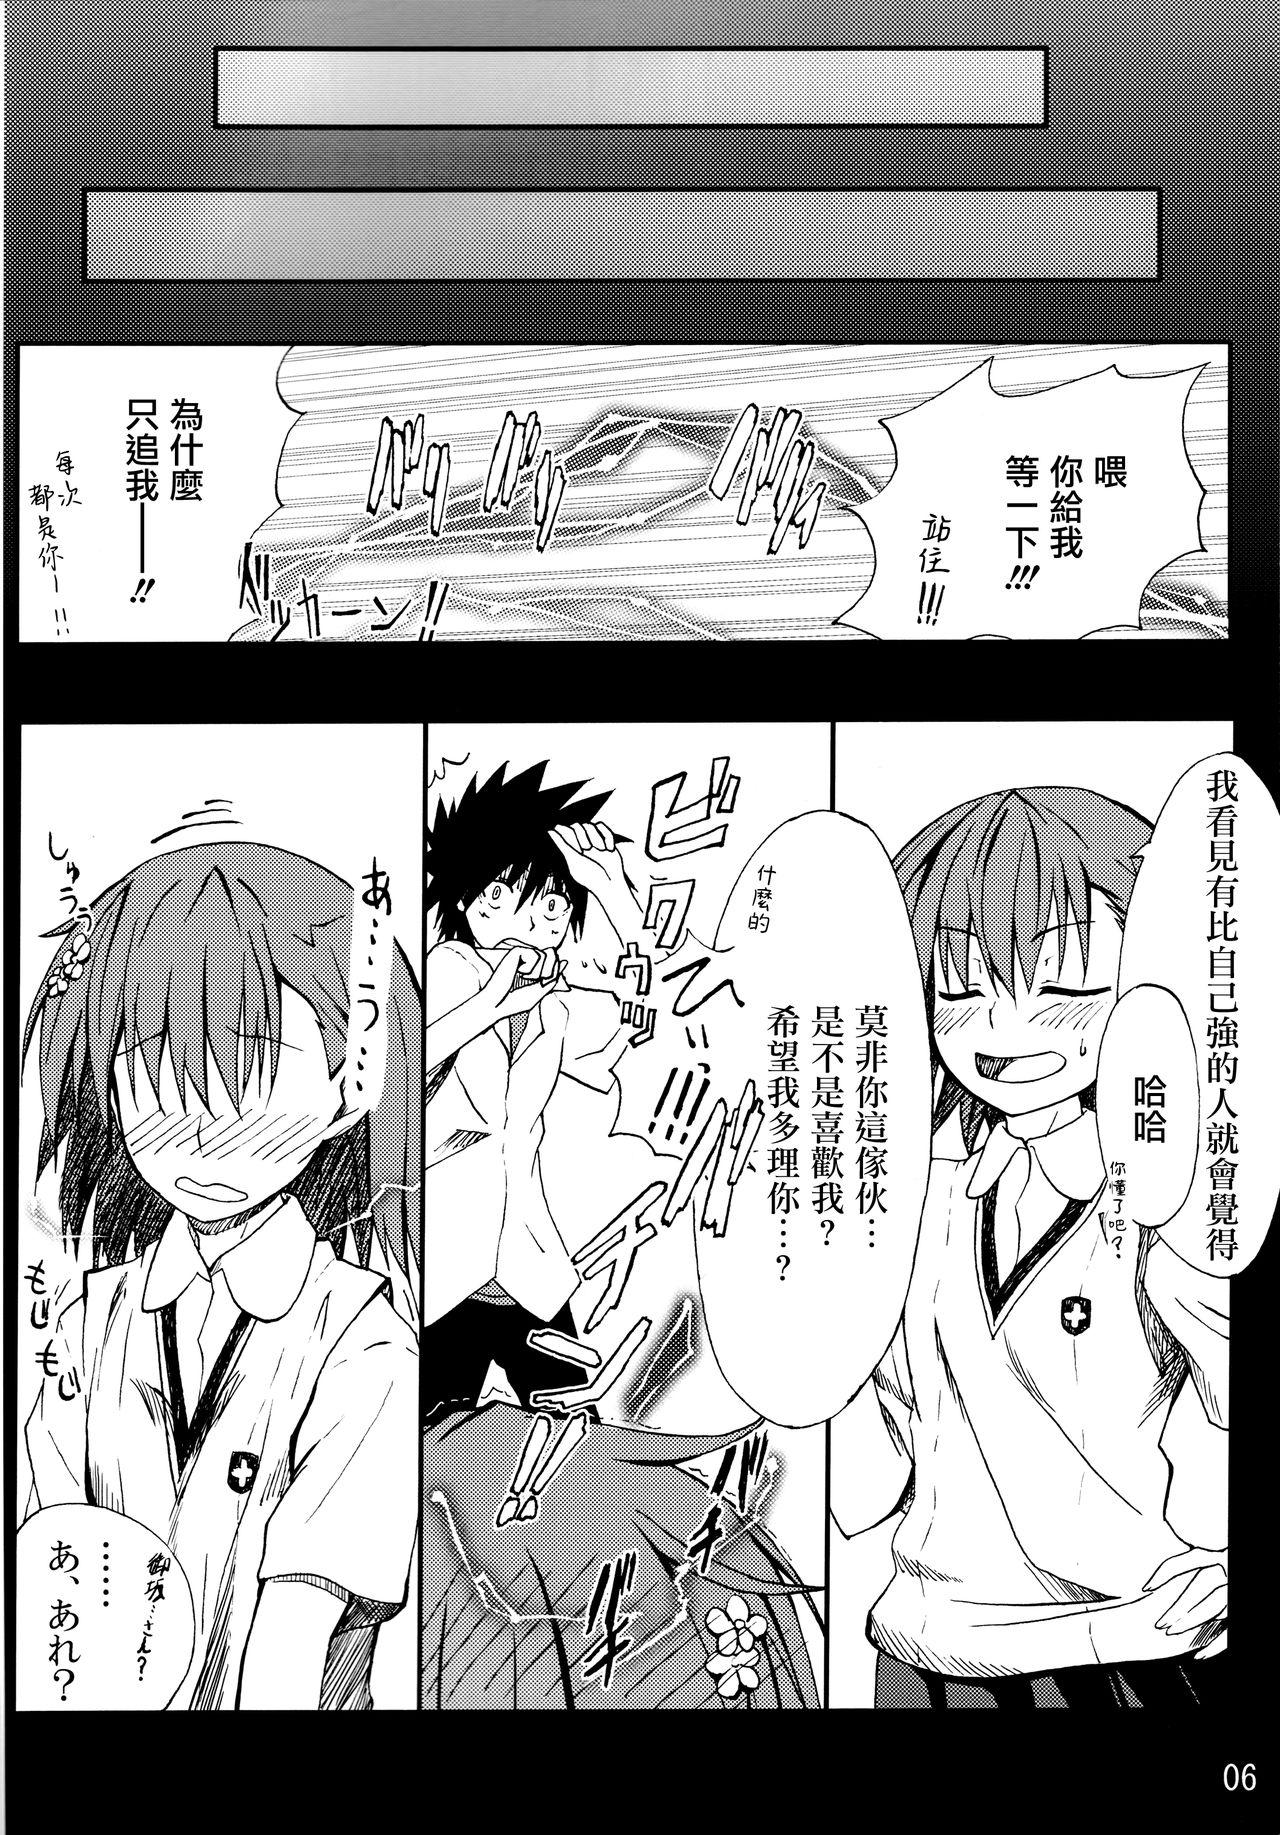 Family Toaru mousou no chou denji hon 02 - Toaru kagaku no railgun Amateur - Page 5